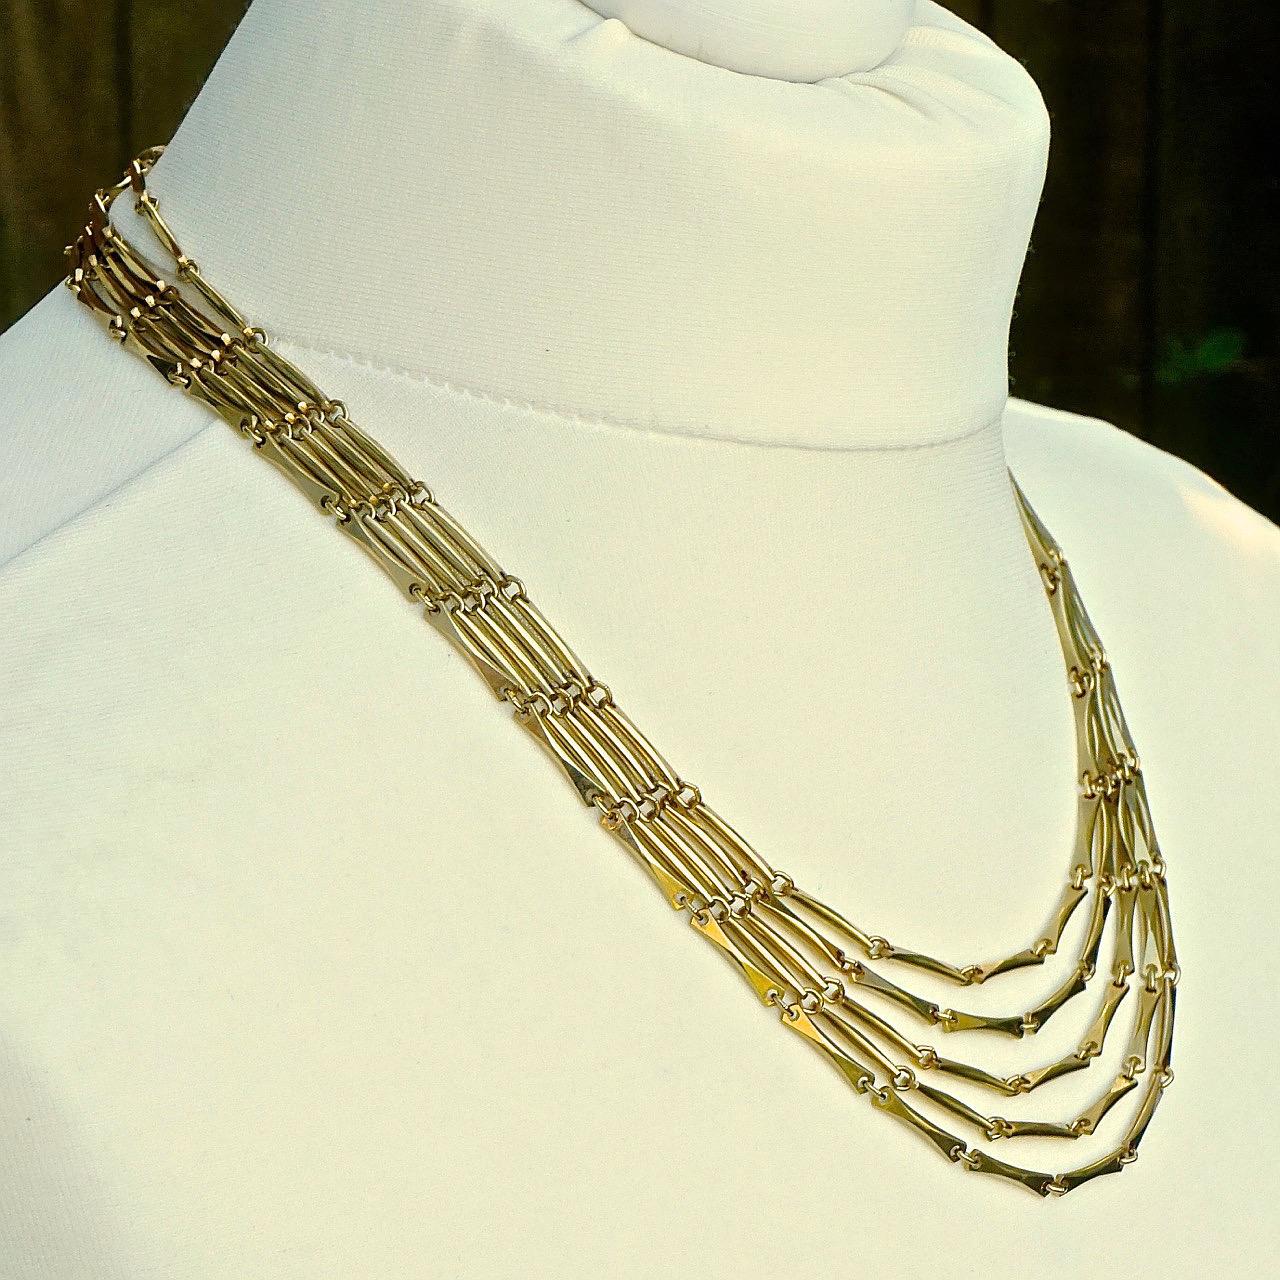 Wunderschöne vergoldete fünfsträngige Halskette mit einer Stab- und Gliederkette und einem strukturierten Verschluss. Der kürzeste Strang hat eine Länge von 49,5 cm / 19,5 Zoll. Die Halskette ist in sehr gutem Zustand.

Dies ist eine schöne